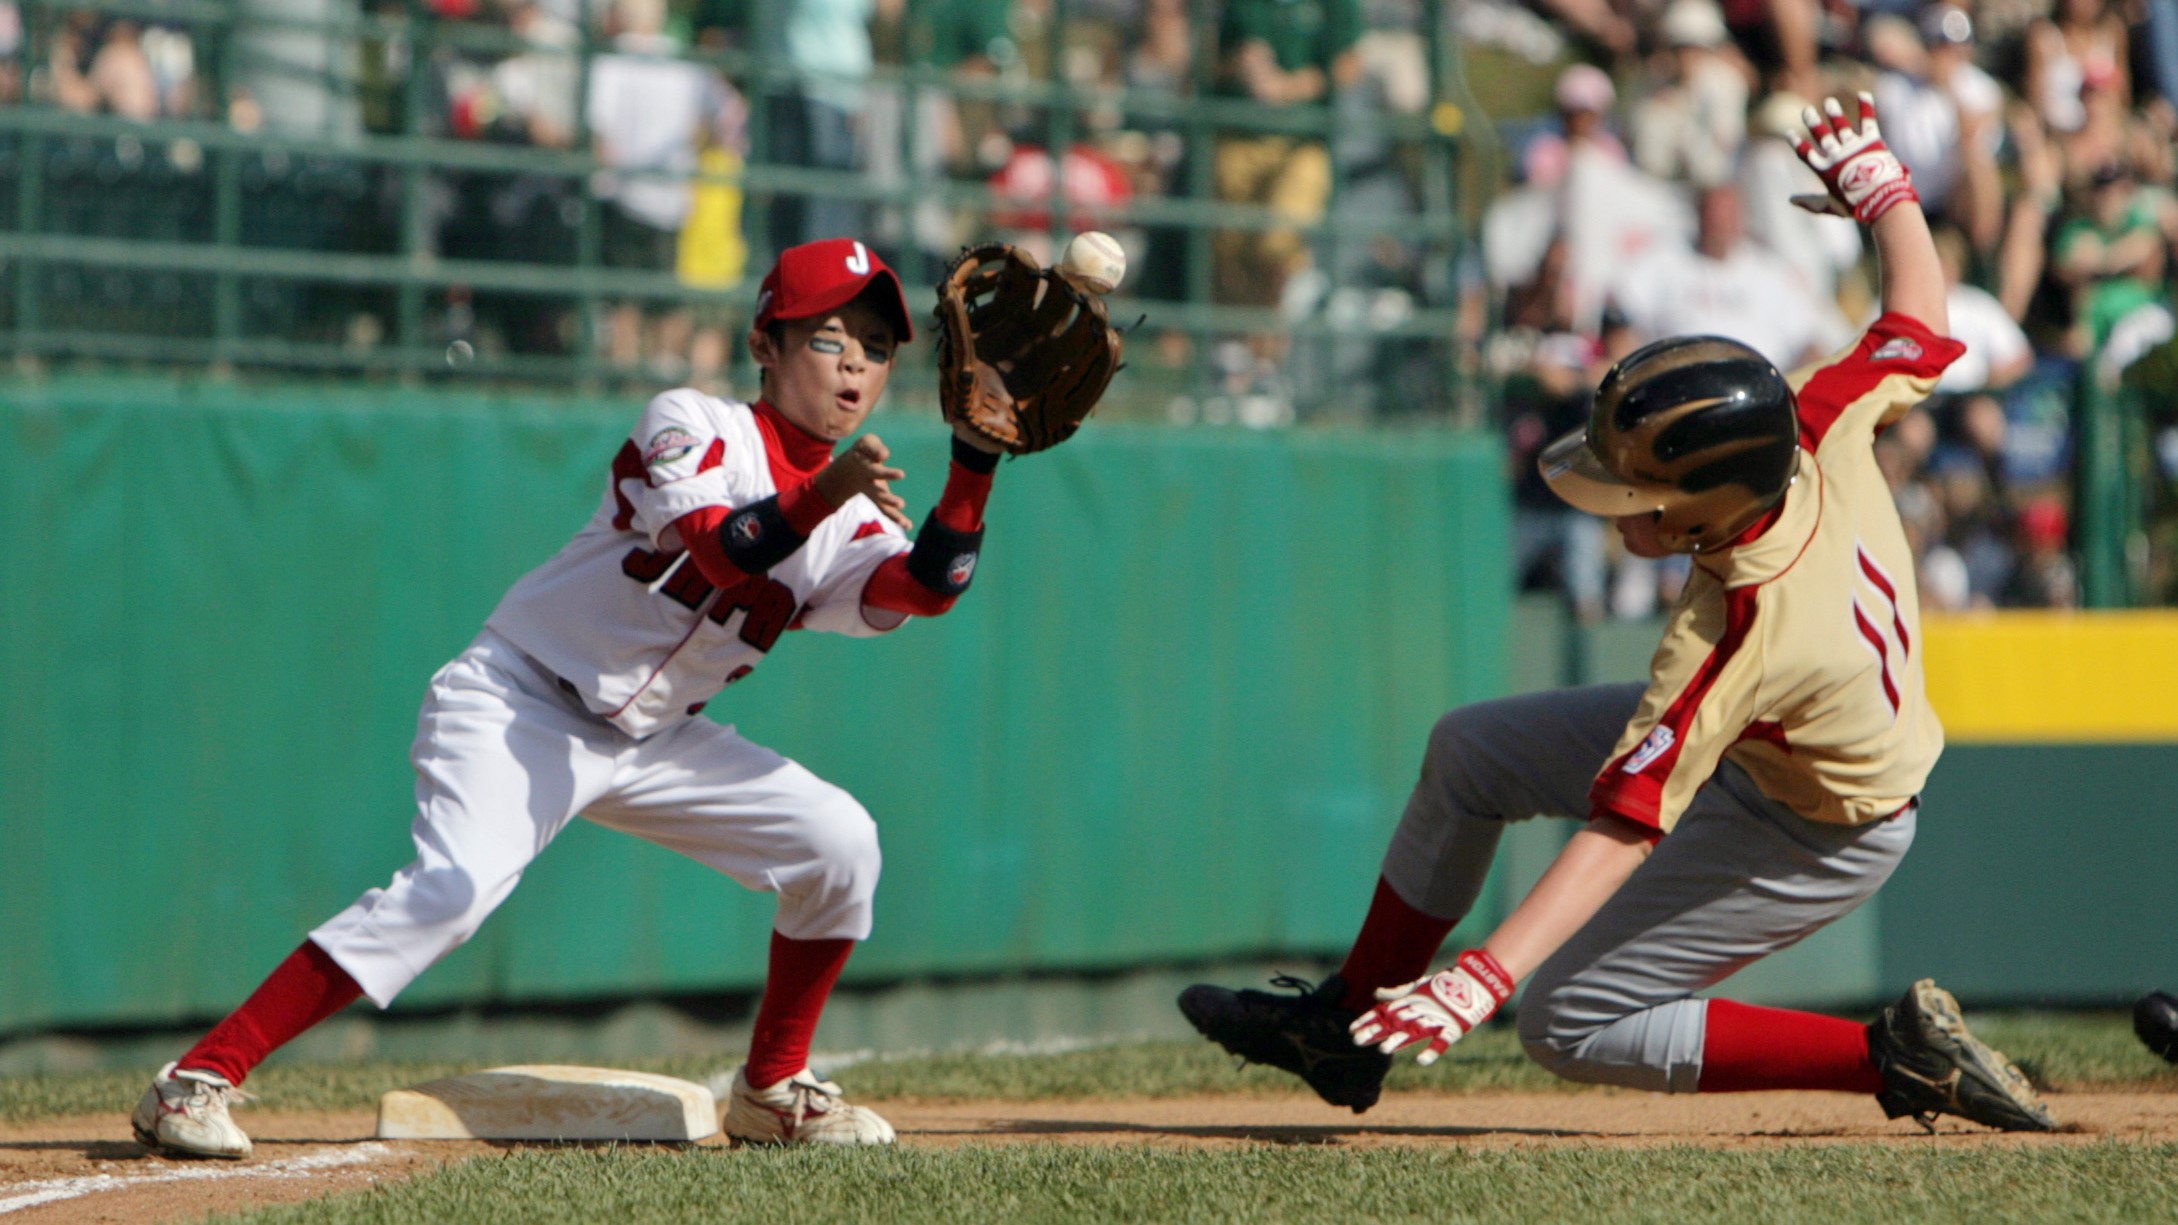 Little League baseball faces declining participation